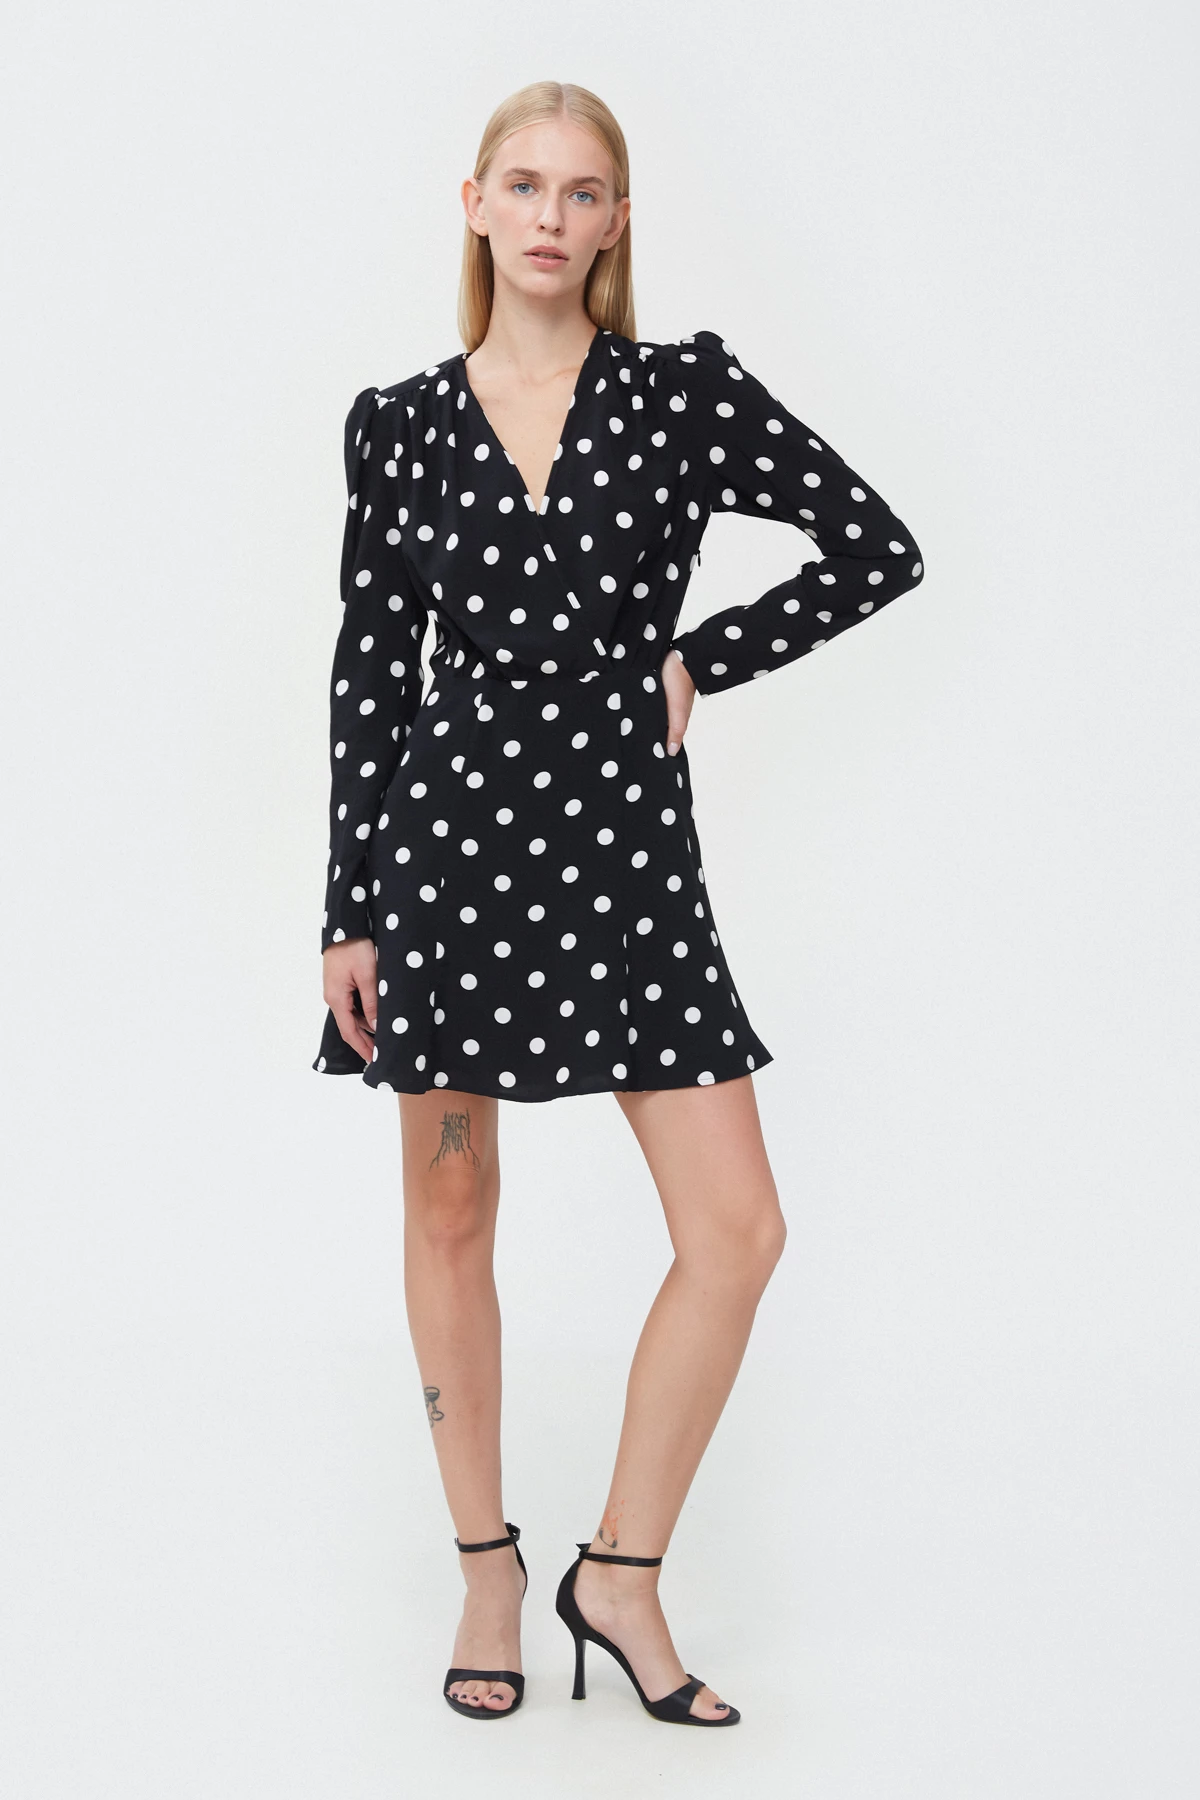 Short black viscose dress with polka dot print, photo 1